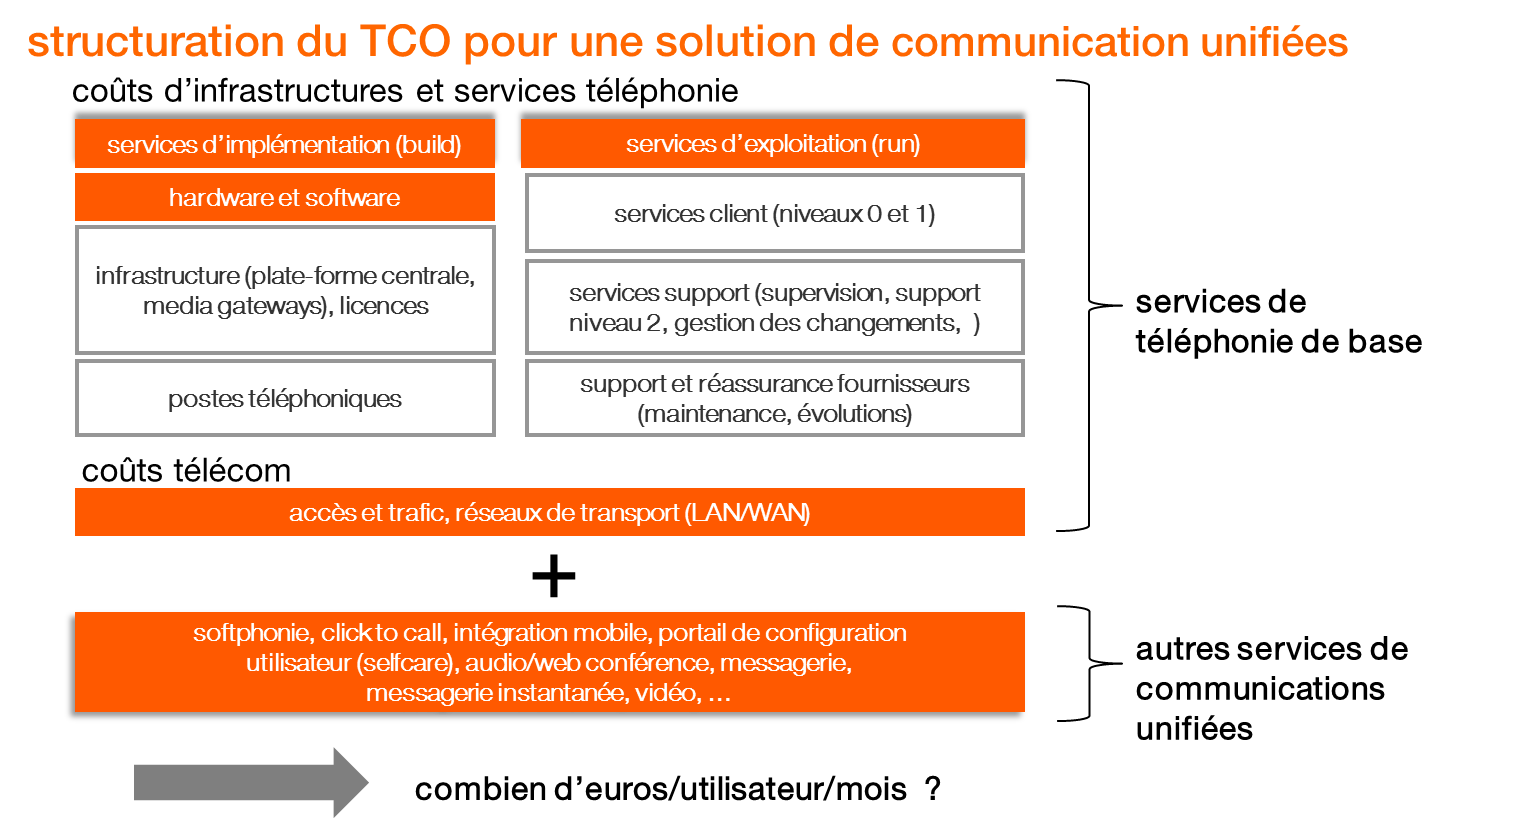 Structuration du TCO pour une solution de communications unifiées